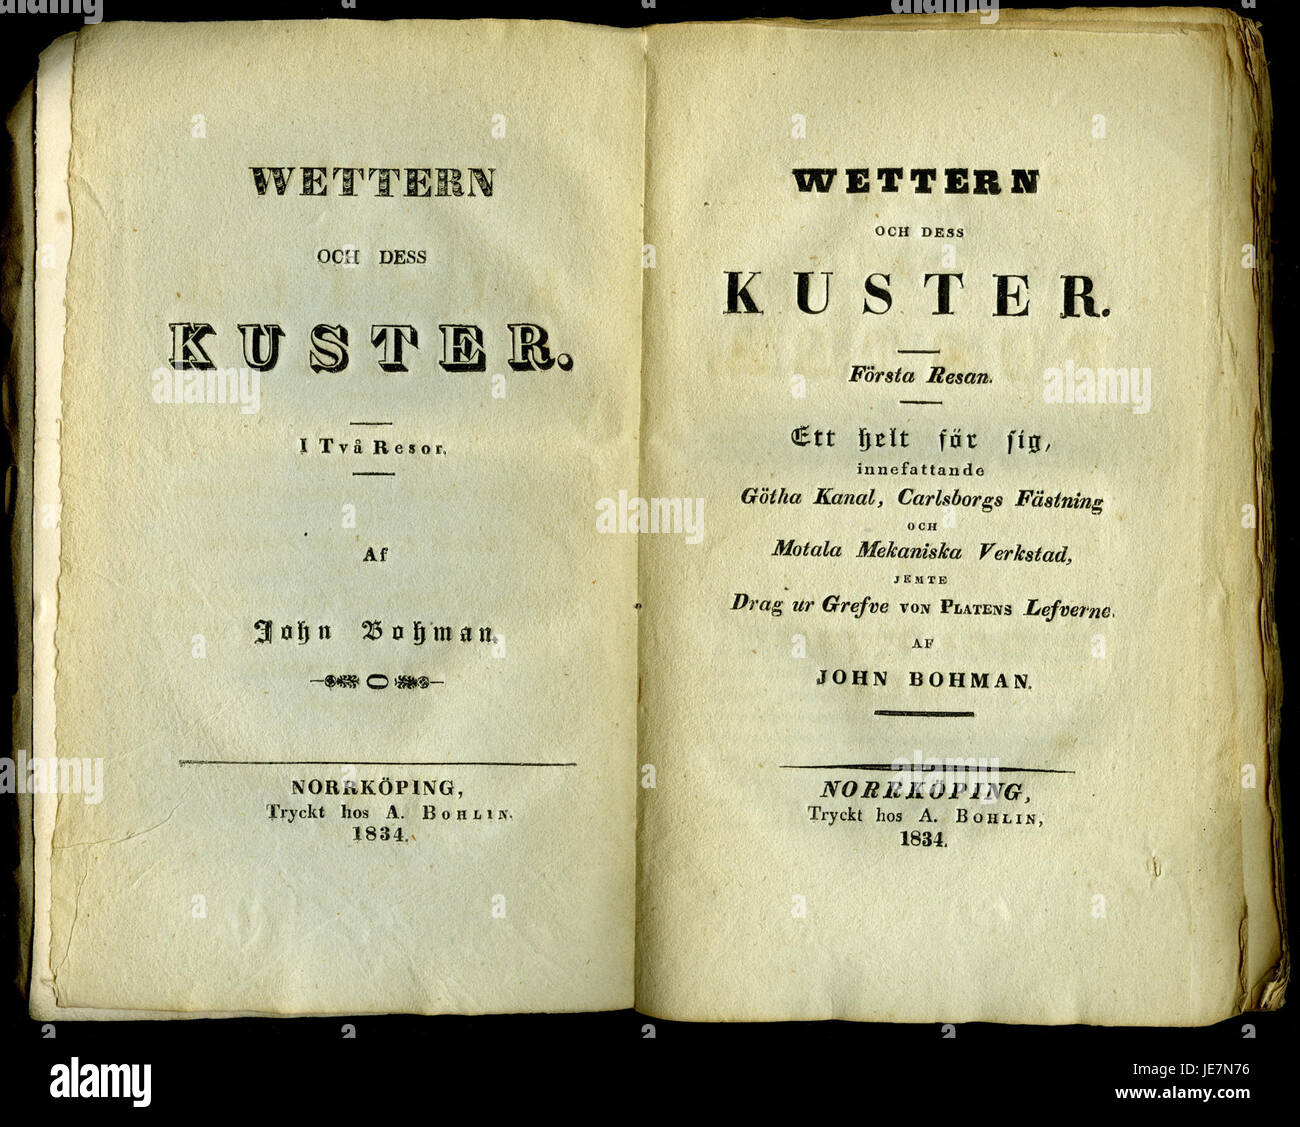 Bohman, Wettern och dess kuster (1834) Foto Stock